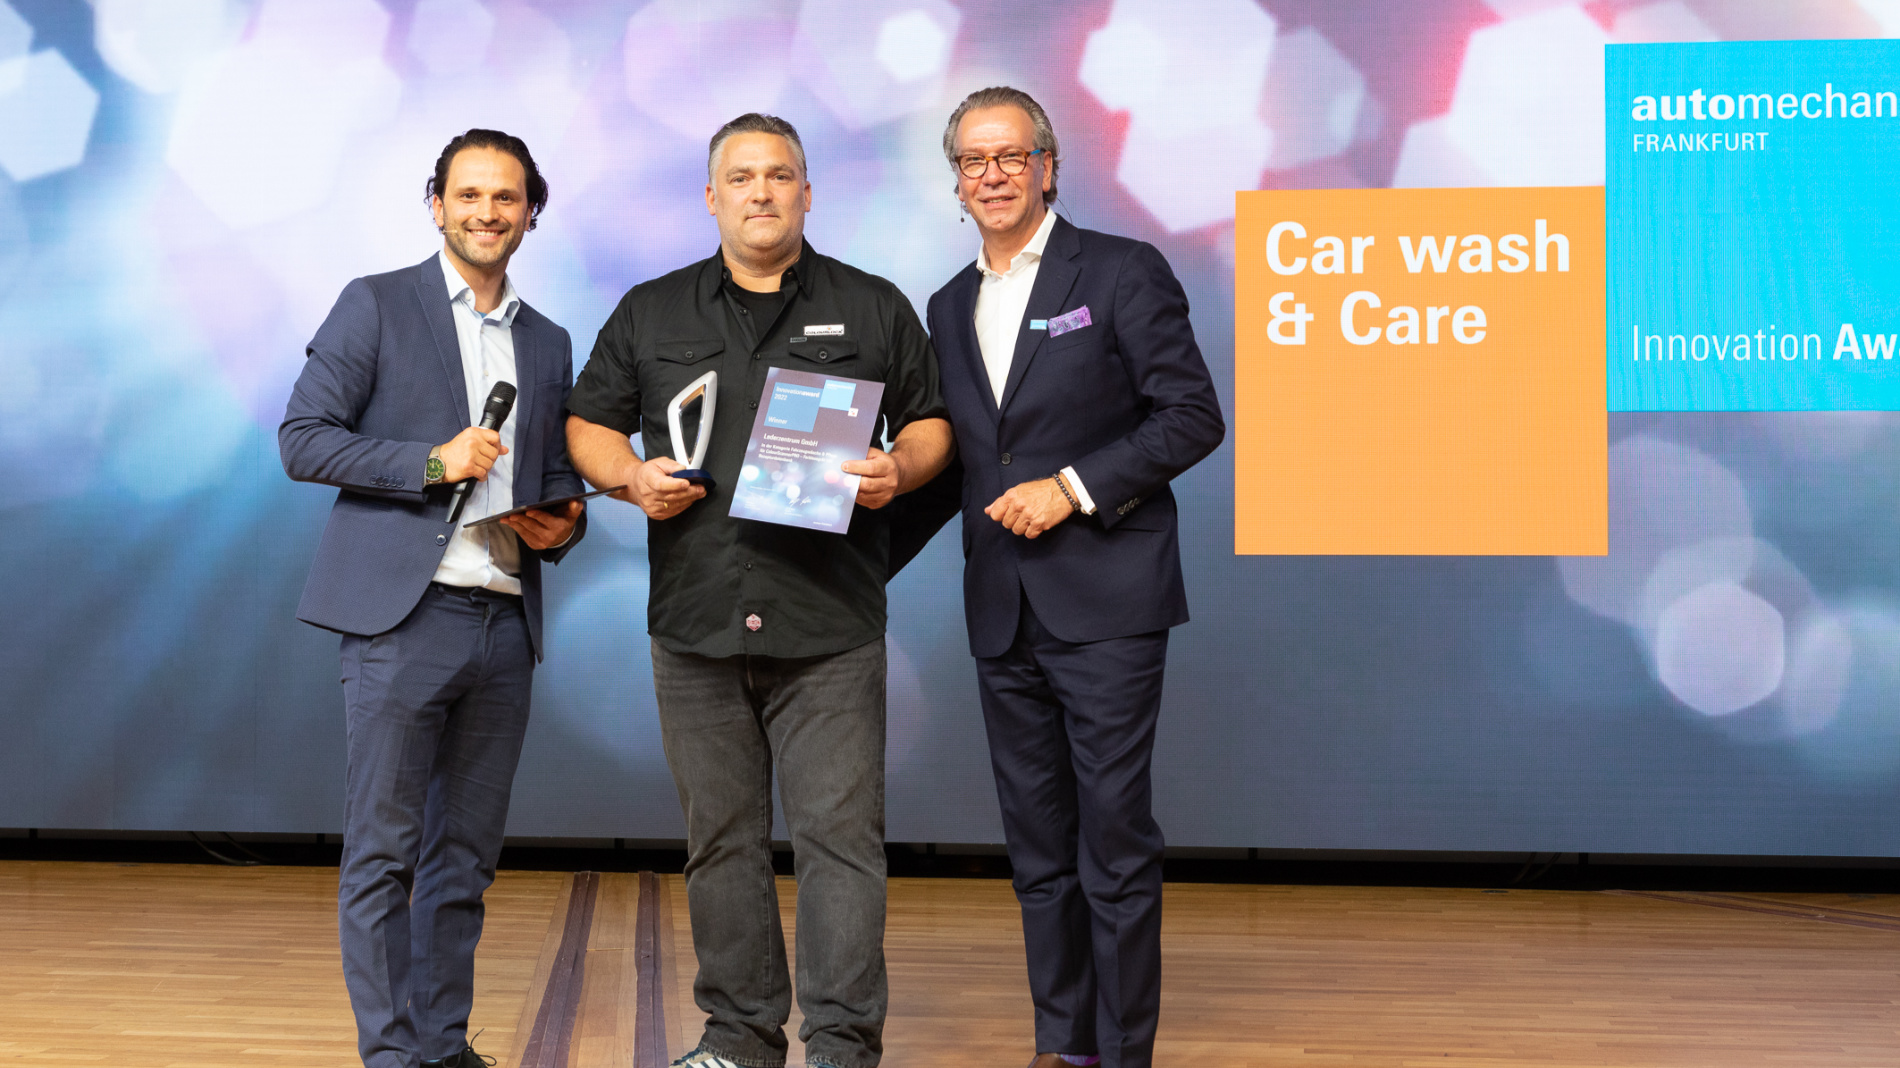 Preisträger des Innovation Awards in der Kategorie Car Wash & Care